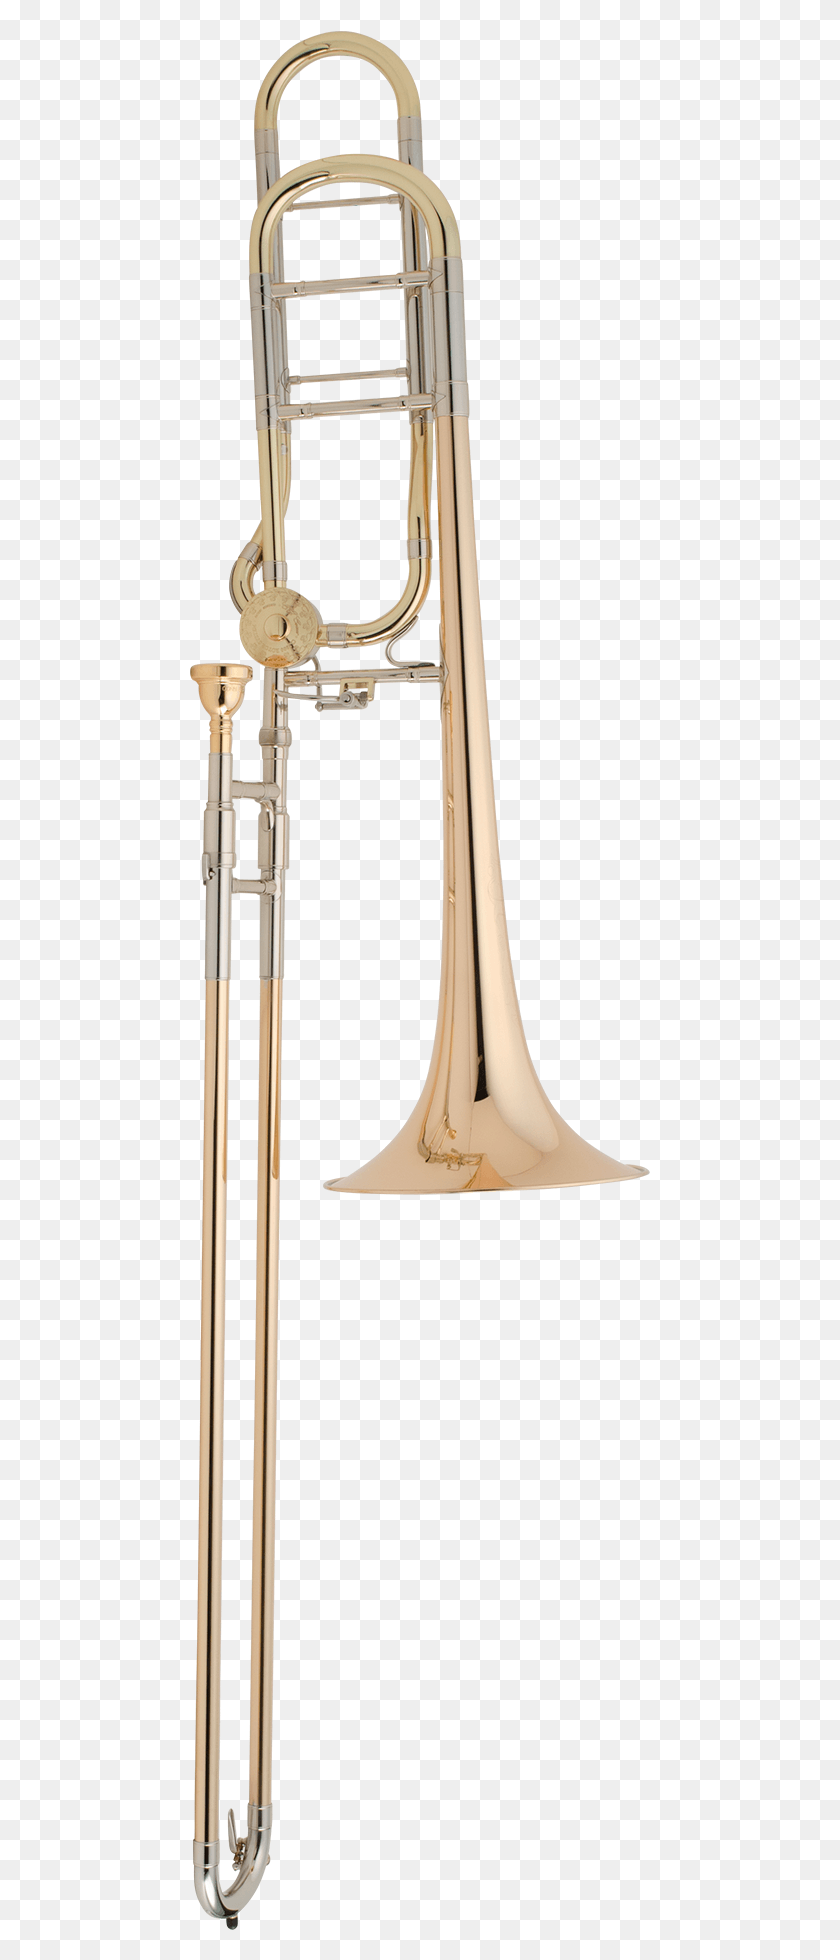 461x1900 Cg Conn Professional Model 88Hcl Теноровый Тромбон Типы Тромбона, Музыкальный Инструмент, Медная Секция, Валторна Hd Png Скачать